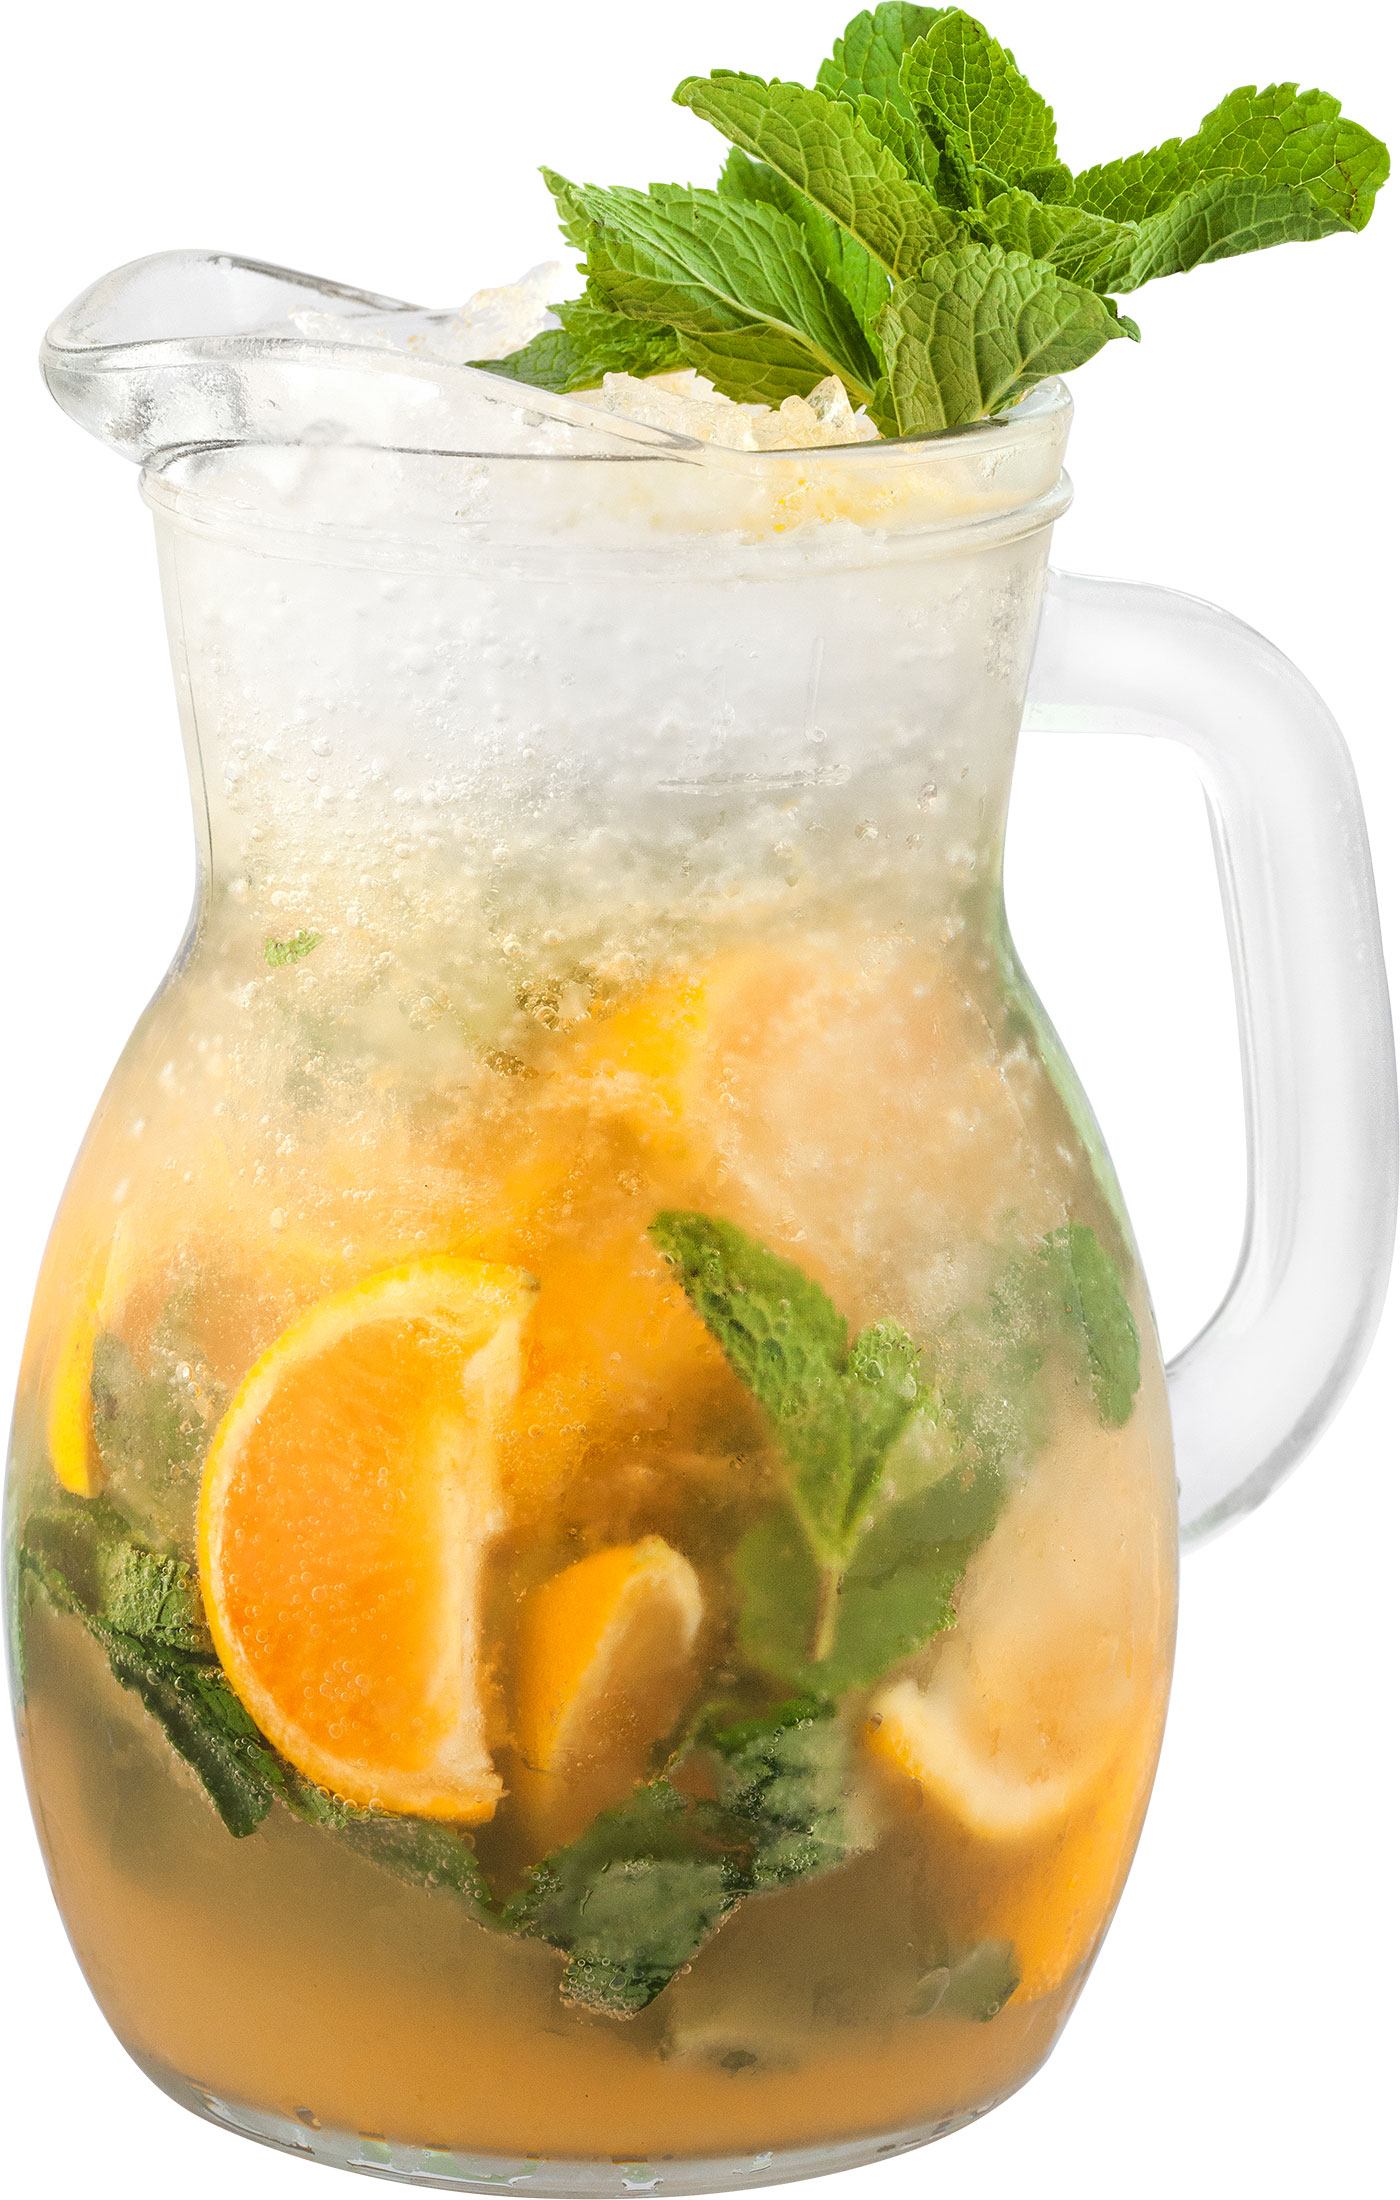 How to Make the Tangerine Lemonade